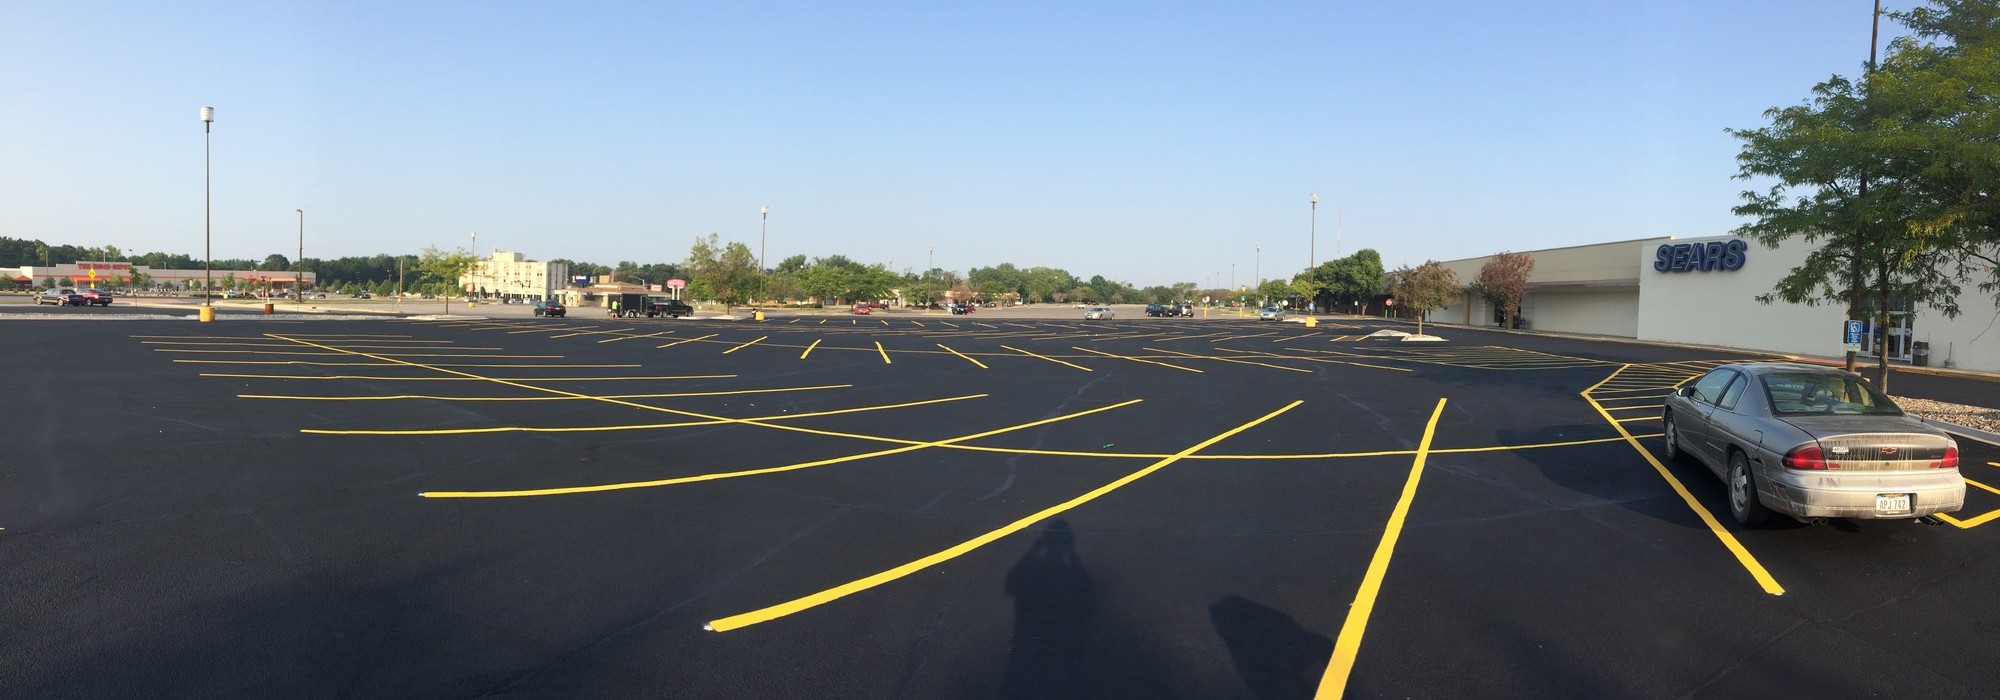 slide parking lot striping sears